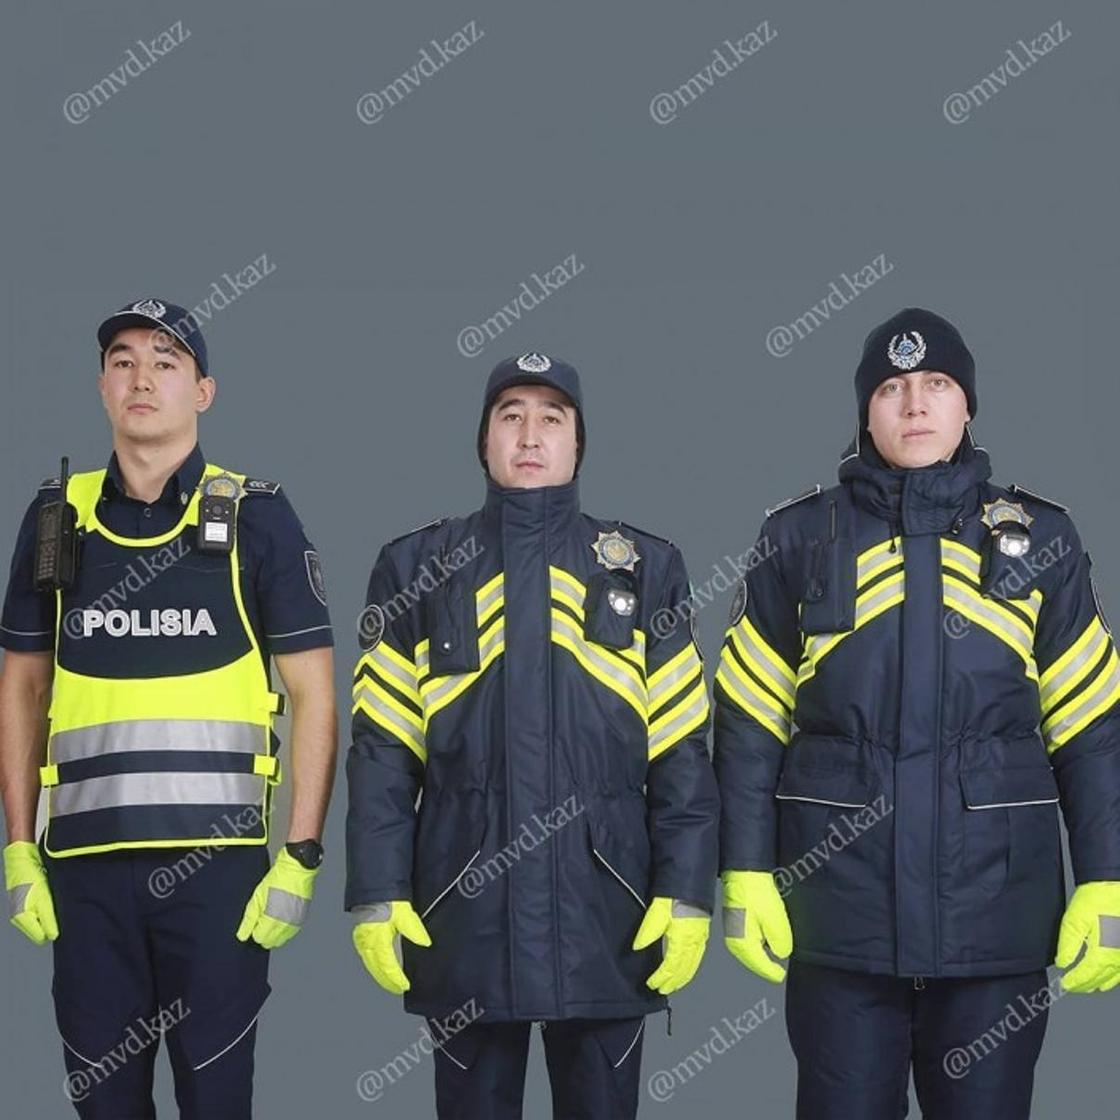 Проект новой формы полицейских показало МВД Казахстана (фото)